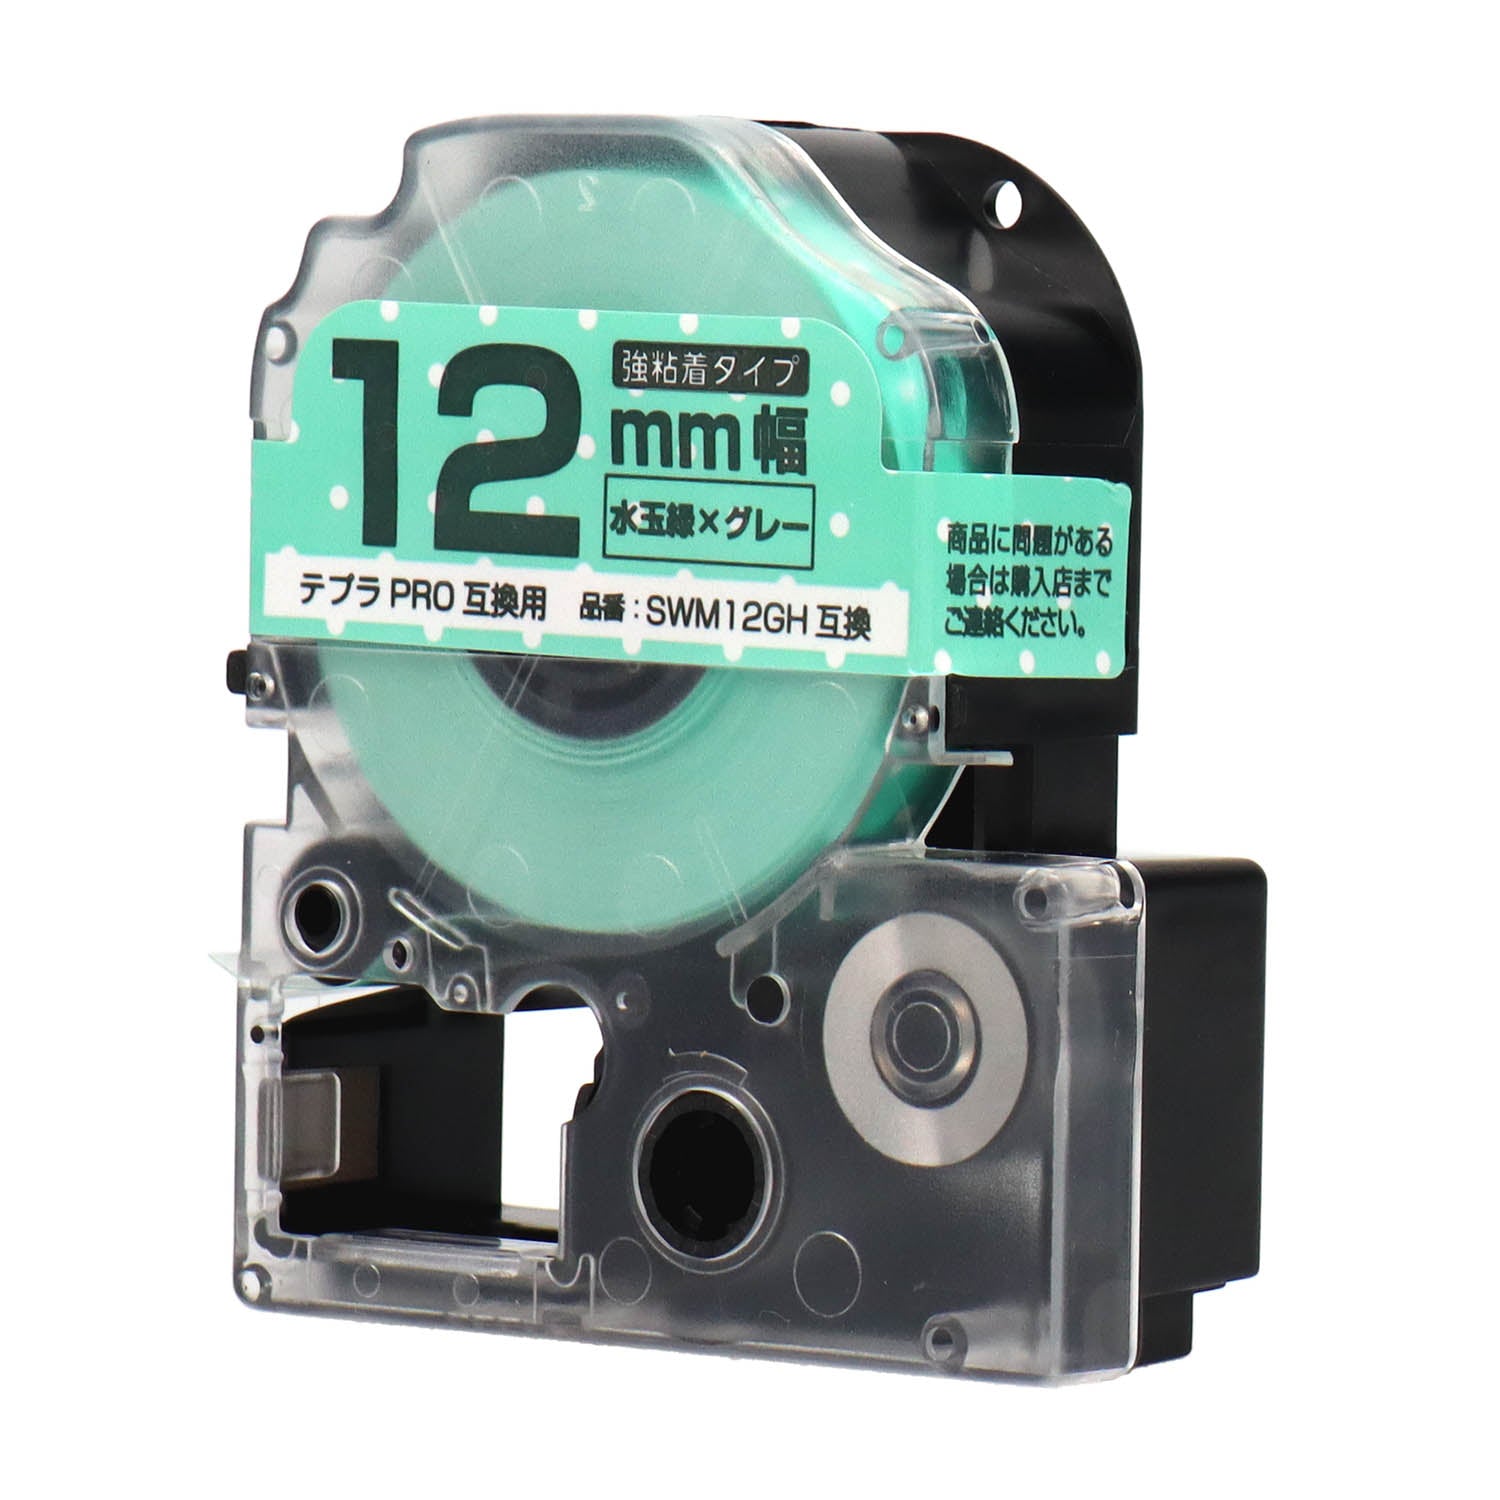 テプラPRO用互換テープカートリッジ 水玉緑×グレー文字 12mm